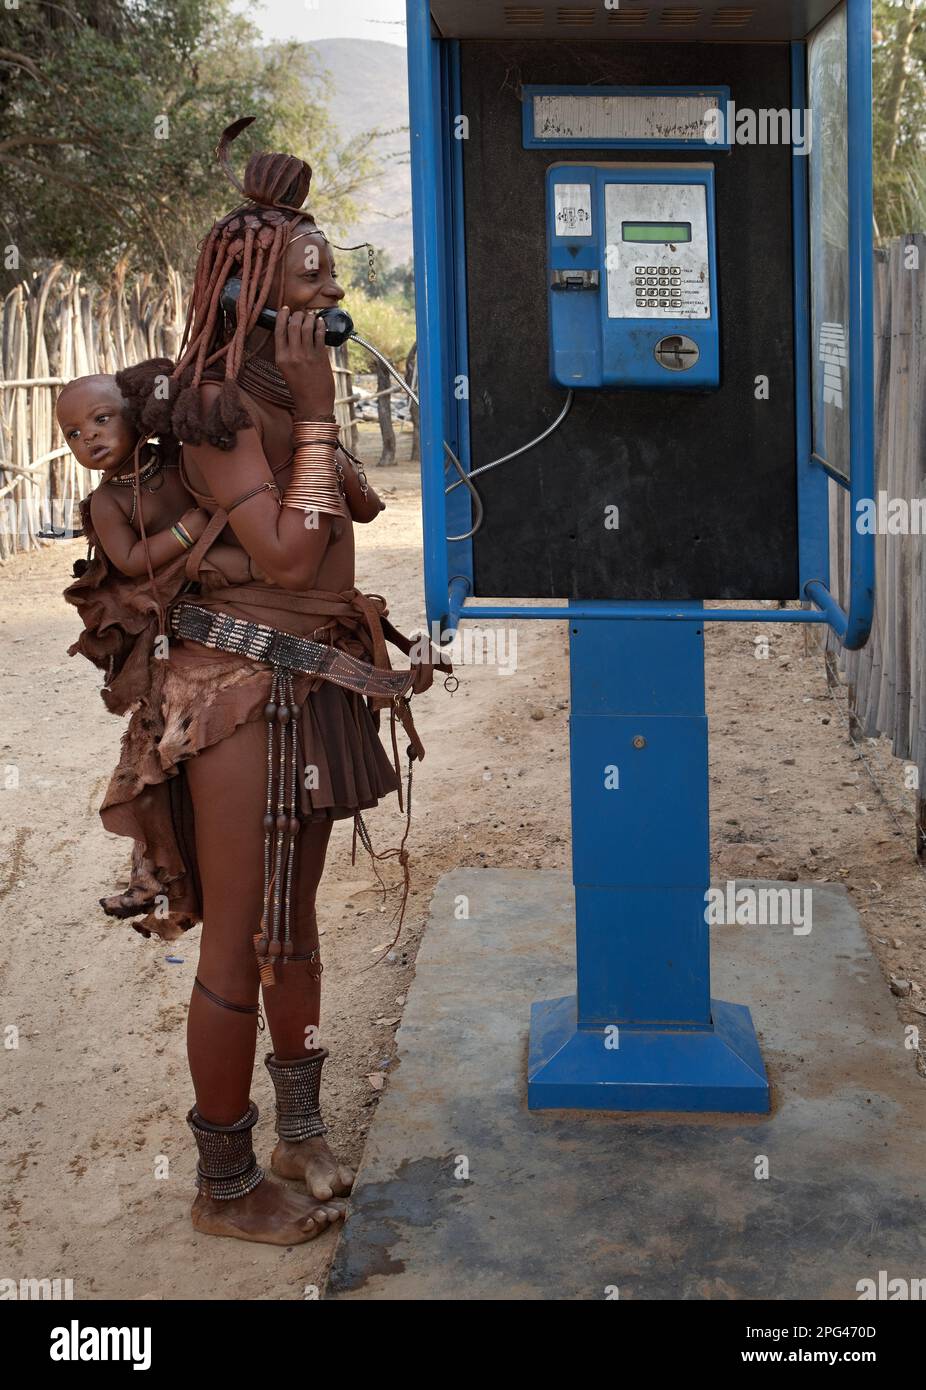 Una mujer Himba, la señorita Mukamuhuvare, habla con un amigo en un teléfono público en un pueblo en el río Kunene. Foto de stock